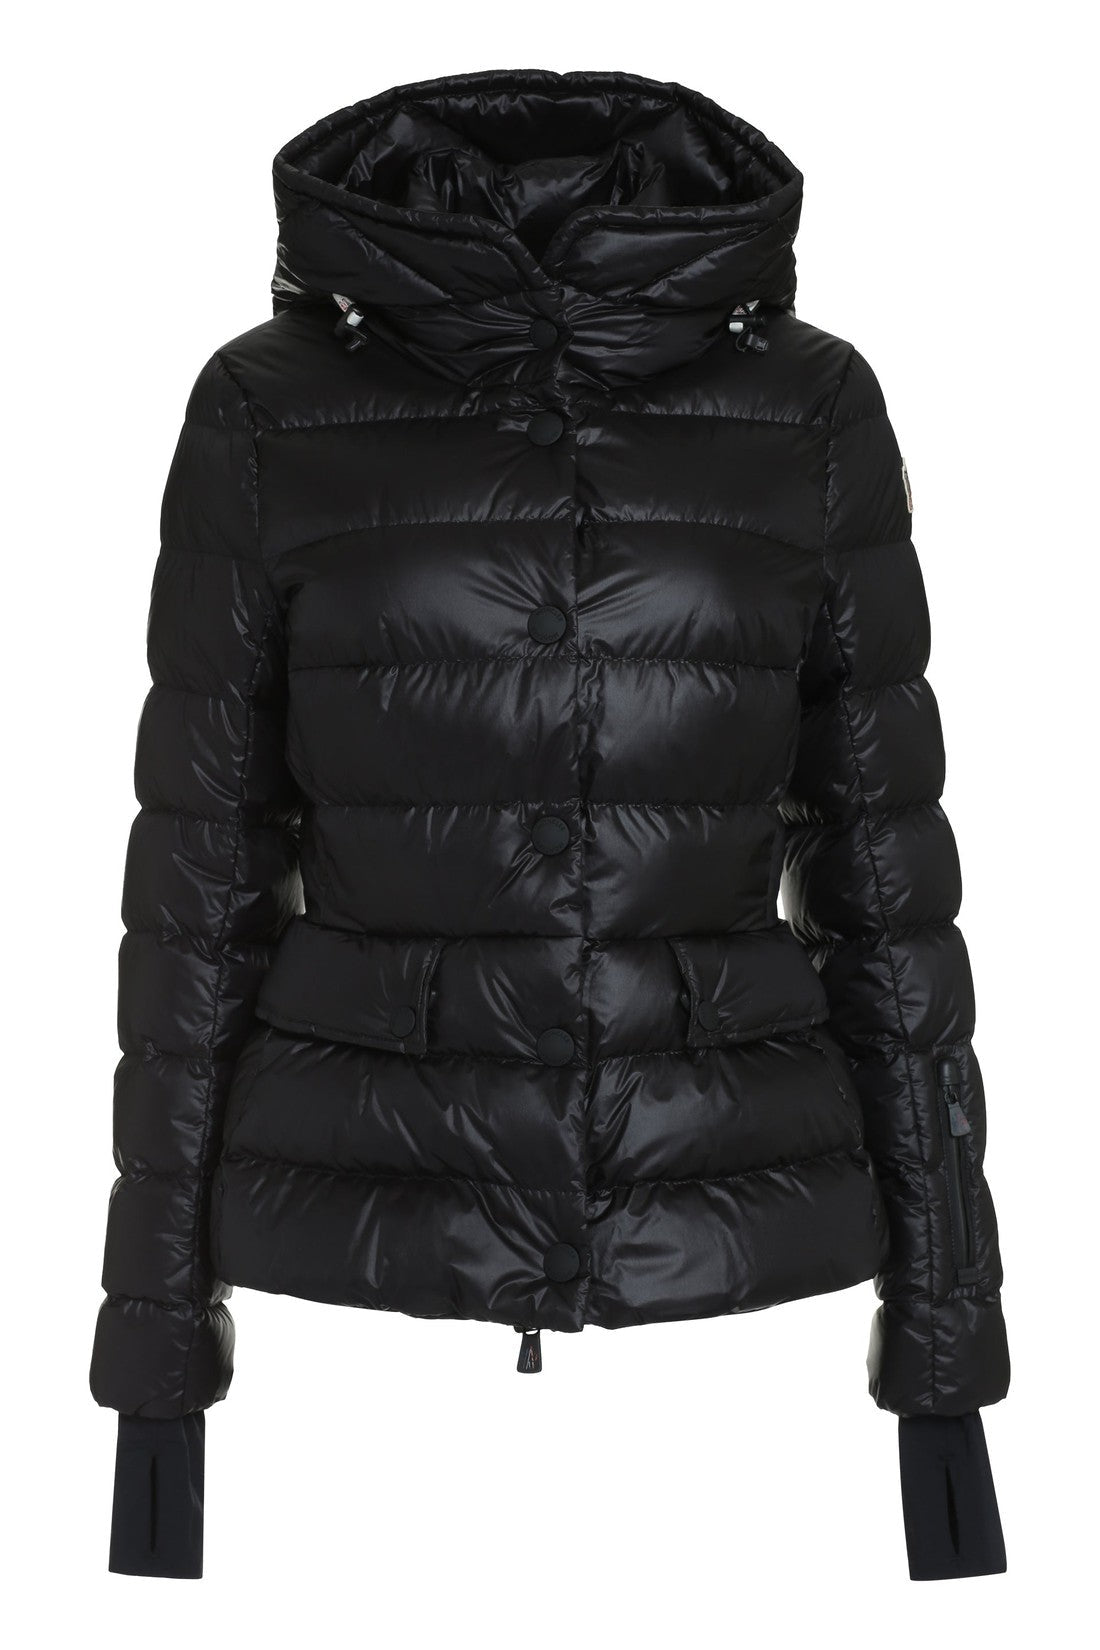 Moncler Grenoble-OUTLET-SALE-Armoniques hooded nylon down jacket-ARCHIVIST